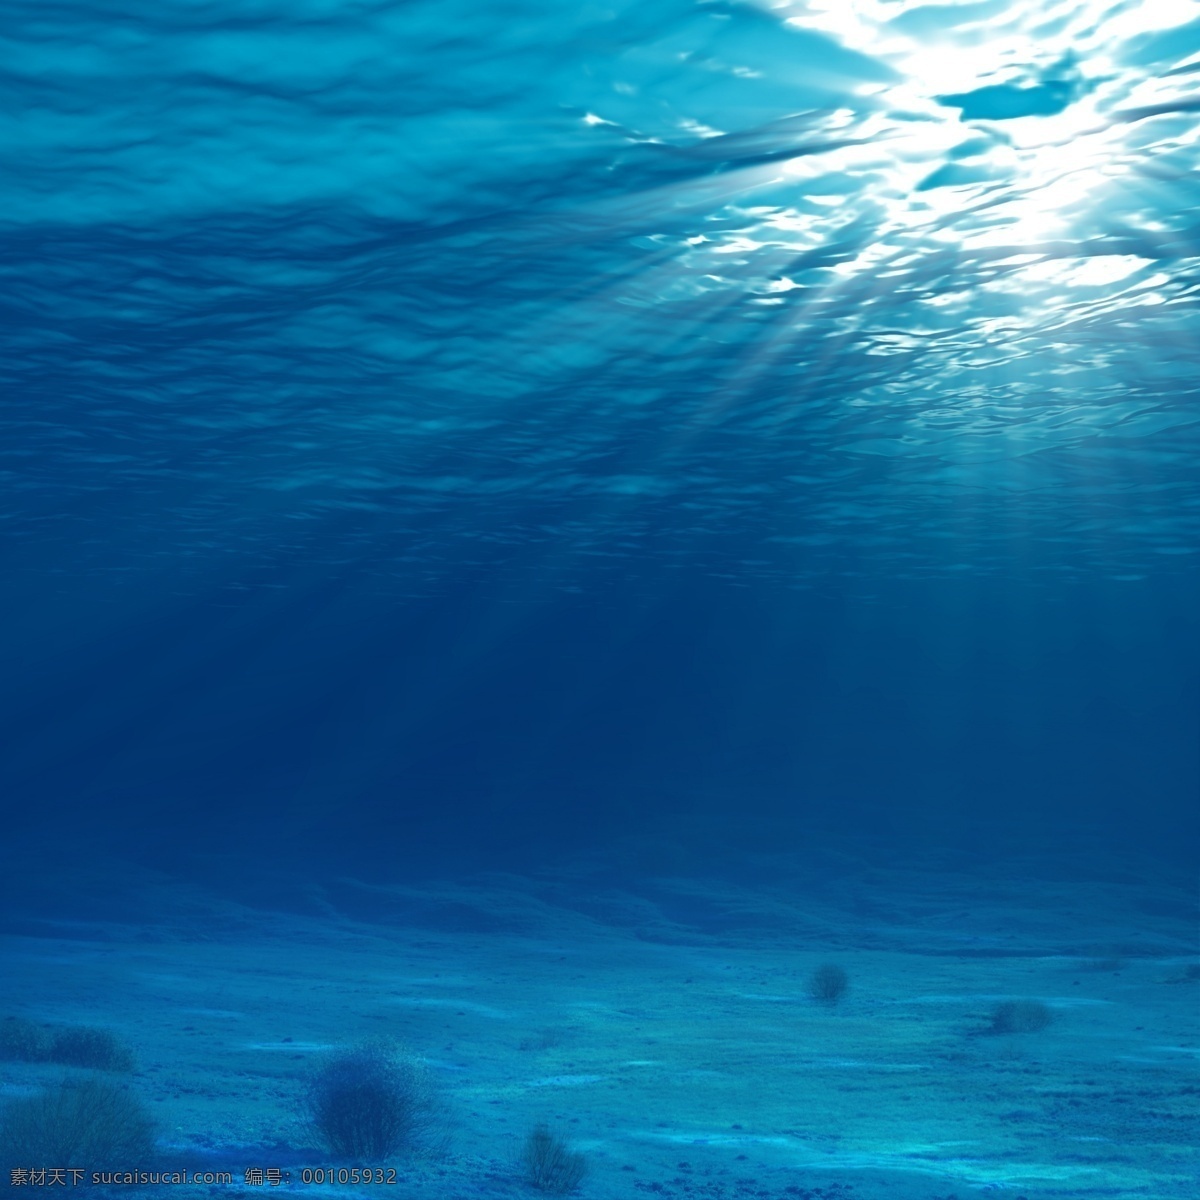 海底背景 海底 蓝色 深海 海波 海光 共享素材